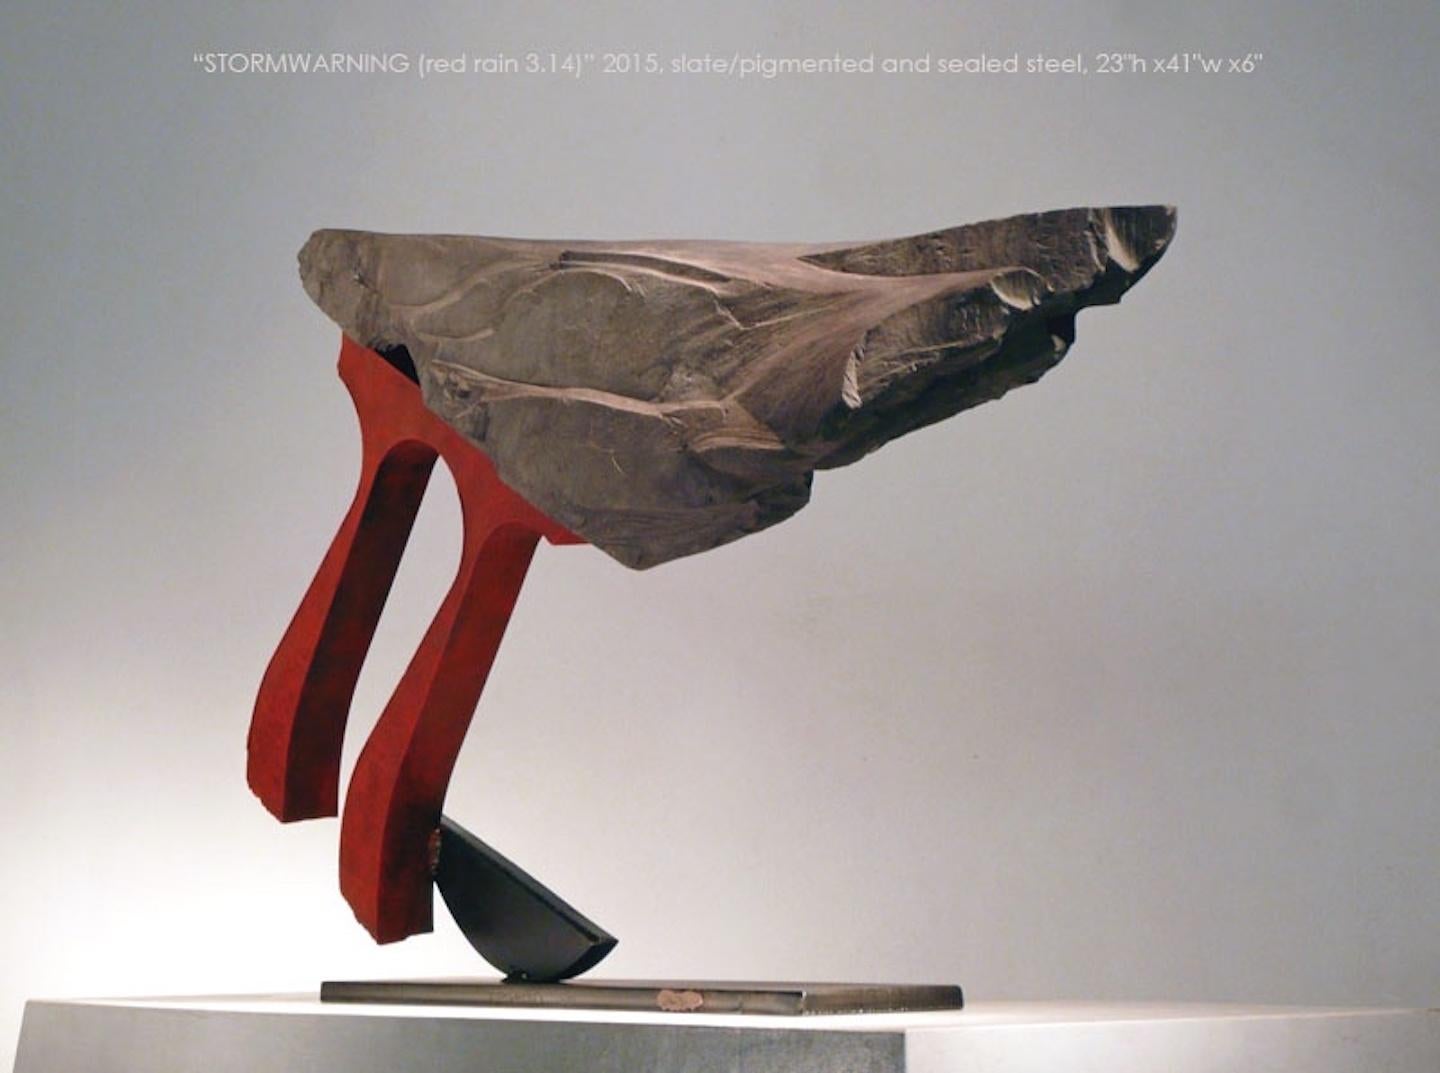 Stormwarning V (Red Rain 3.14) - Gray Abstract Sculpture by John Van Alstine